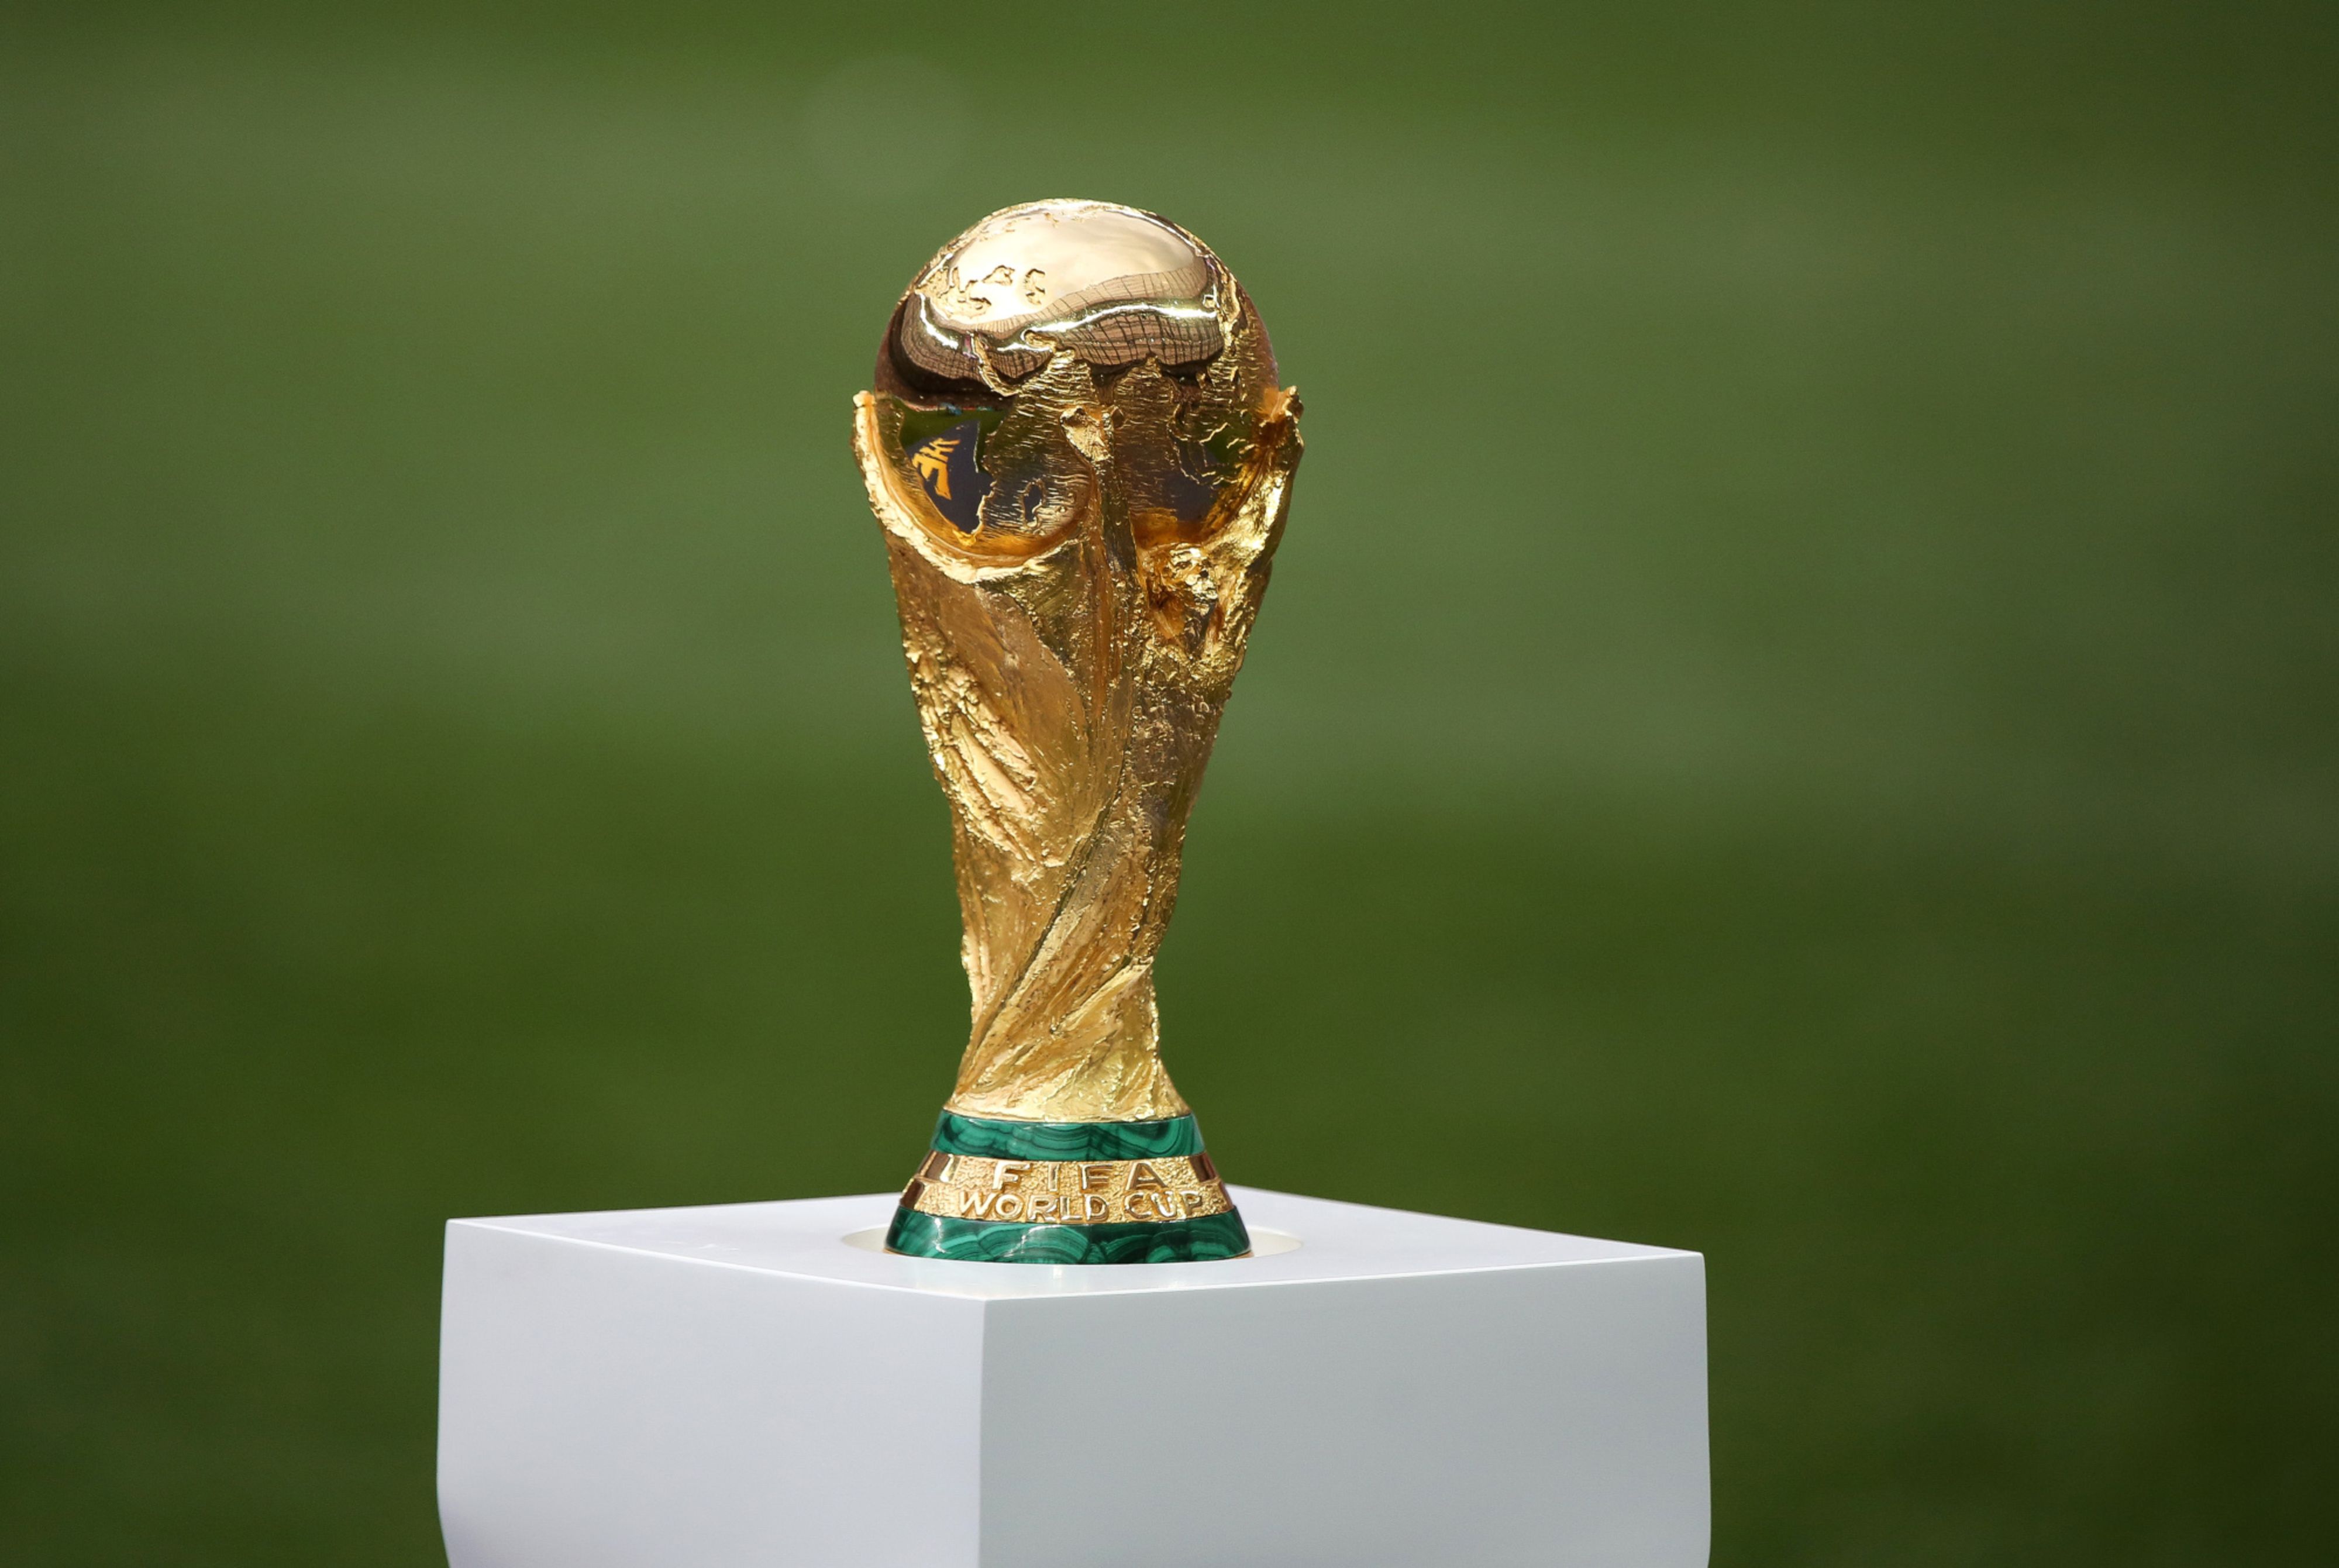 Mundial Qatar 2022: dónde está la Copa que trajo la Selección